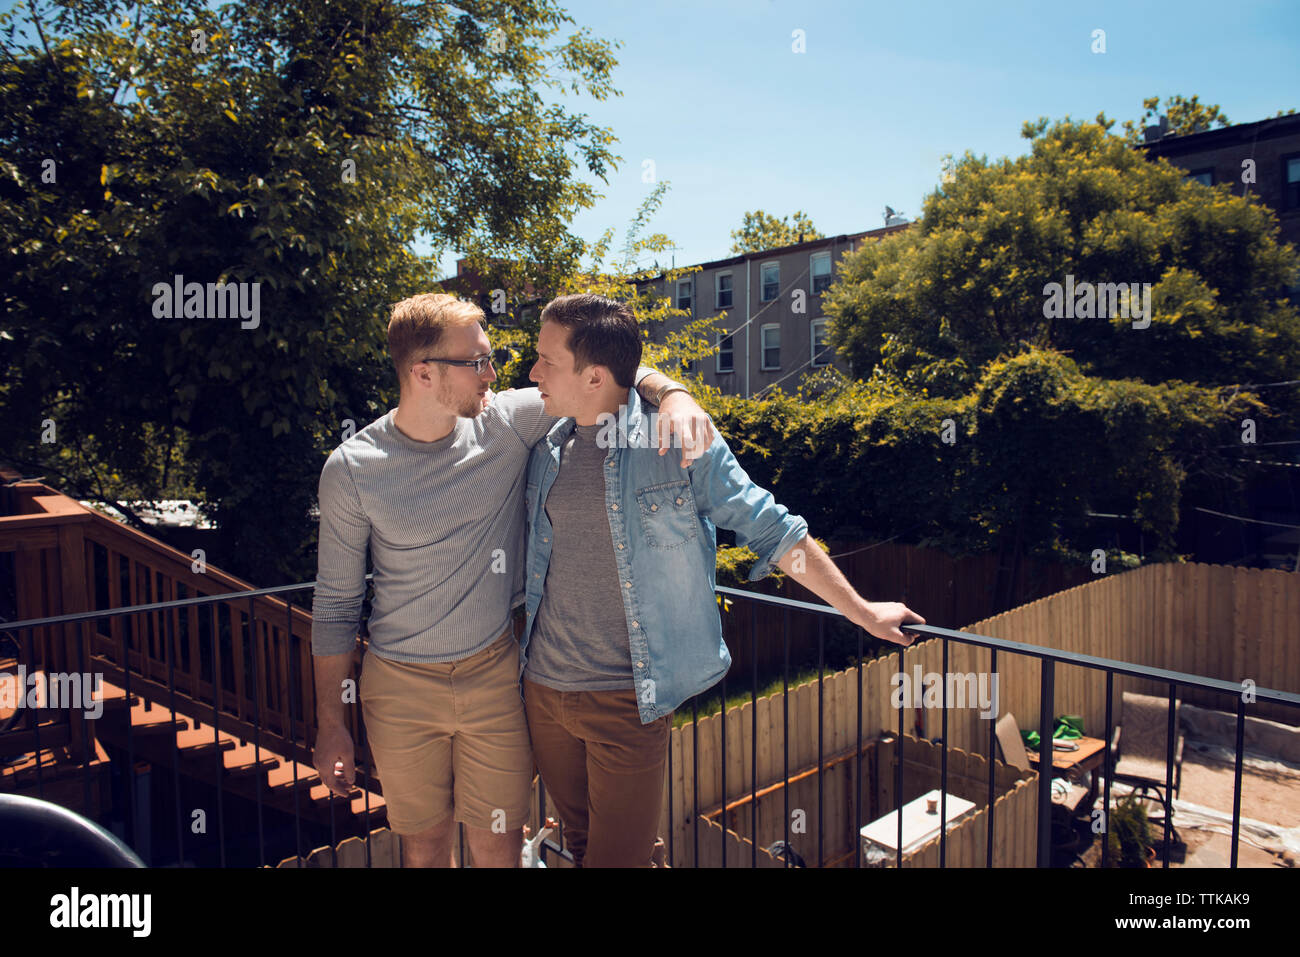 Vorderansicht eines schwulen Paares in Balkon gegen Bäume Stockfoto